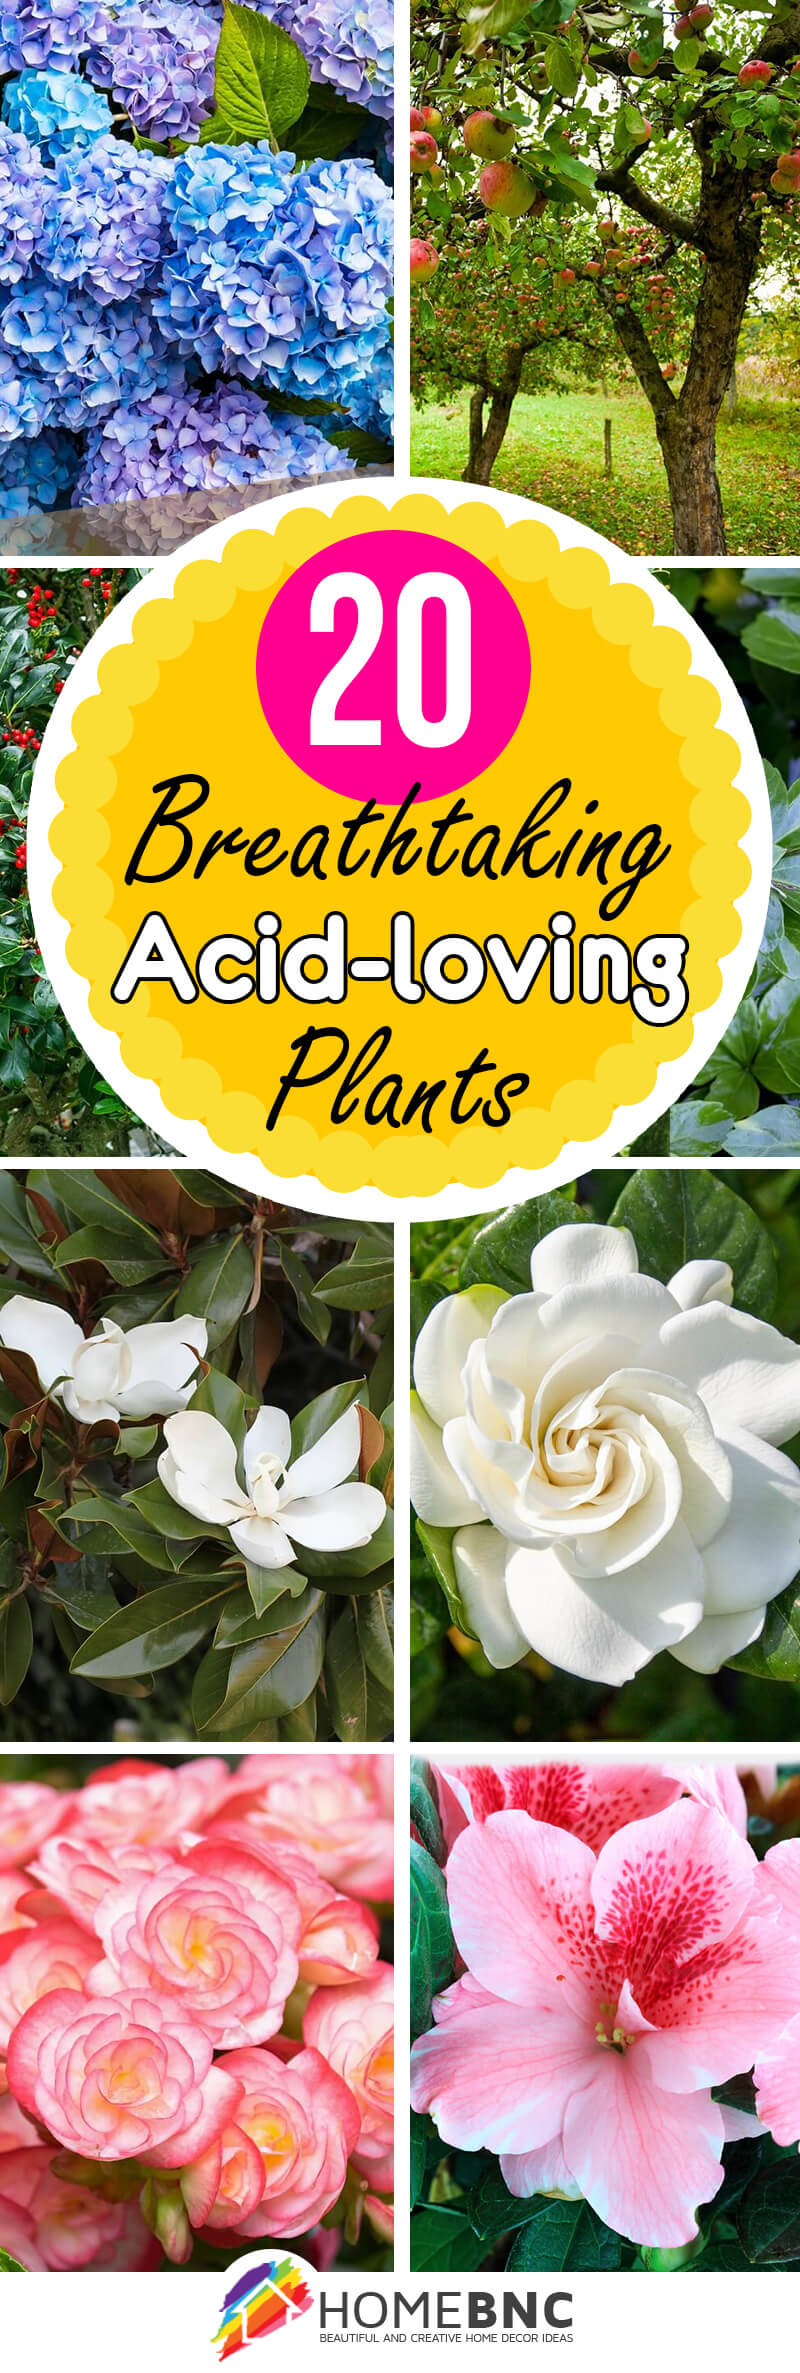 Acid-loving Plants